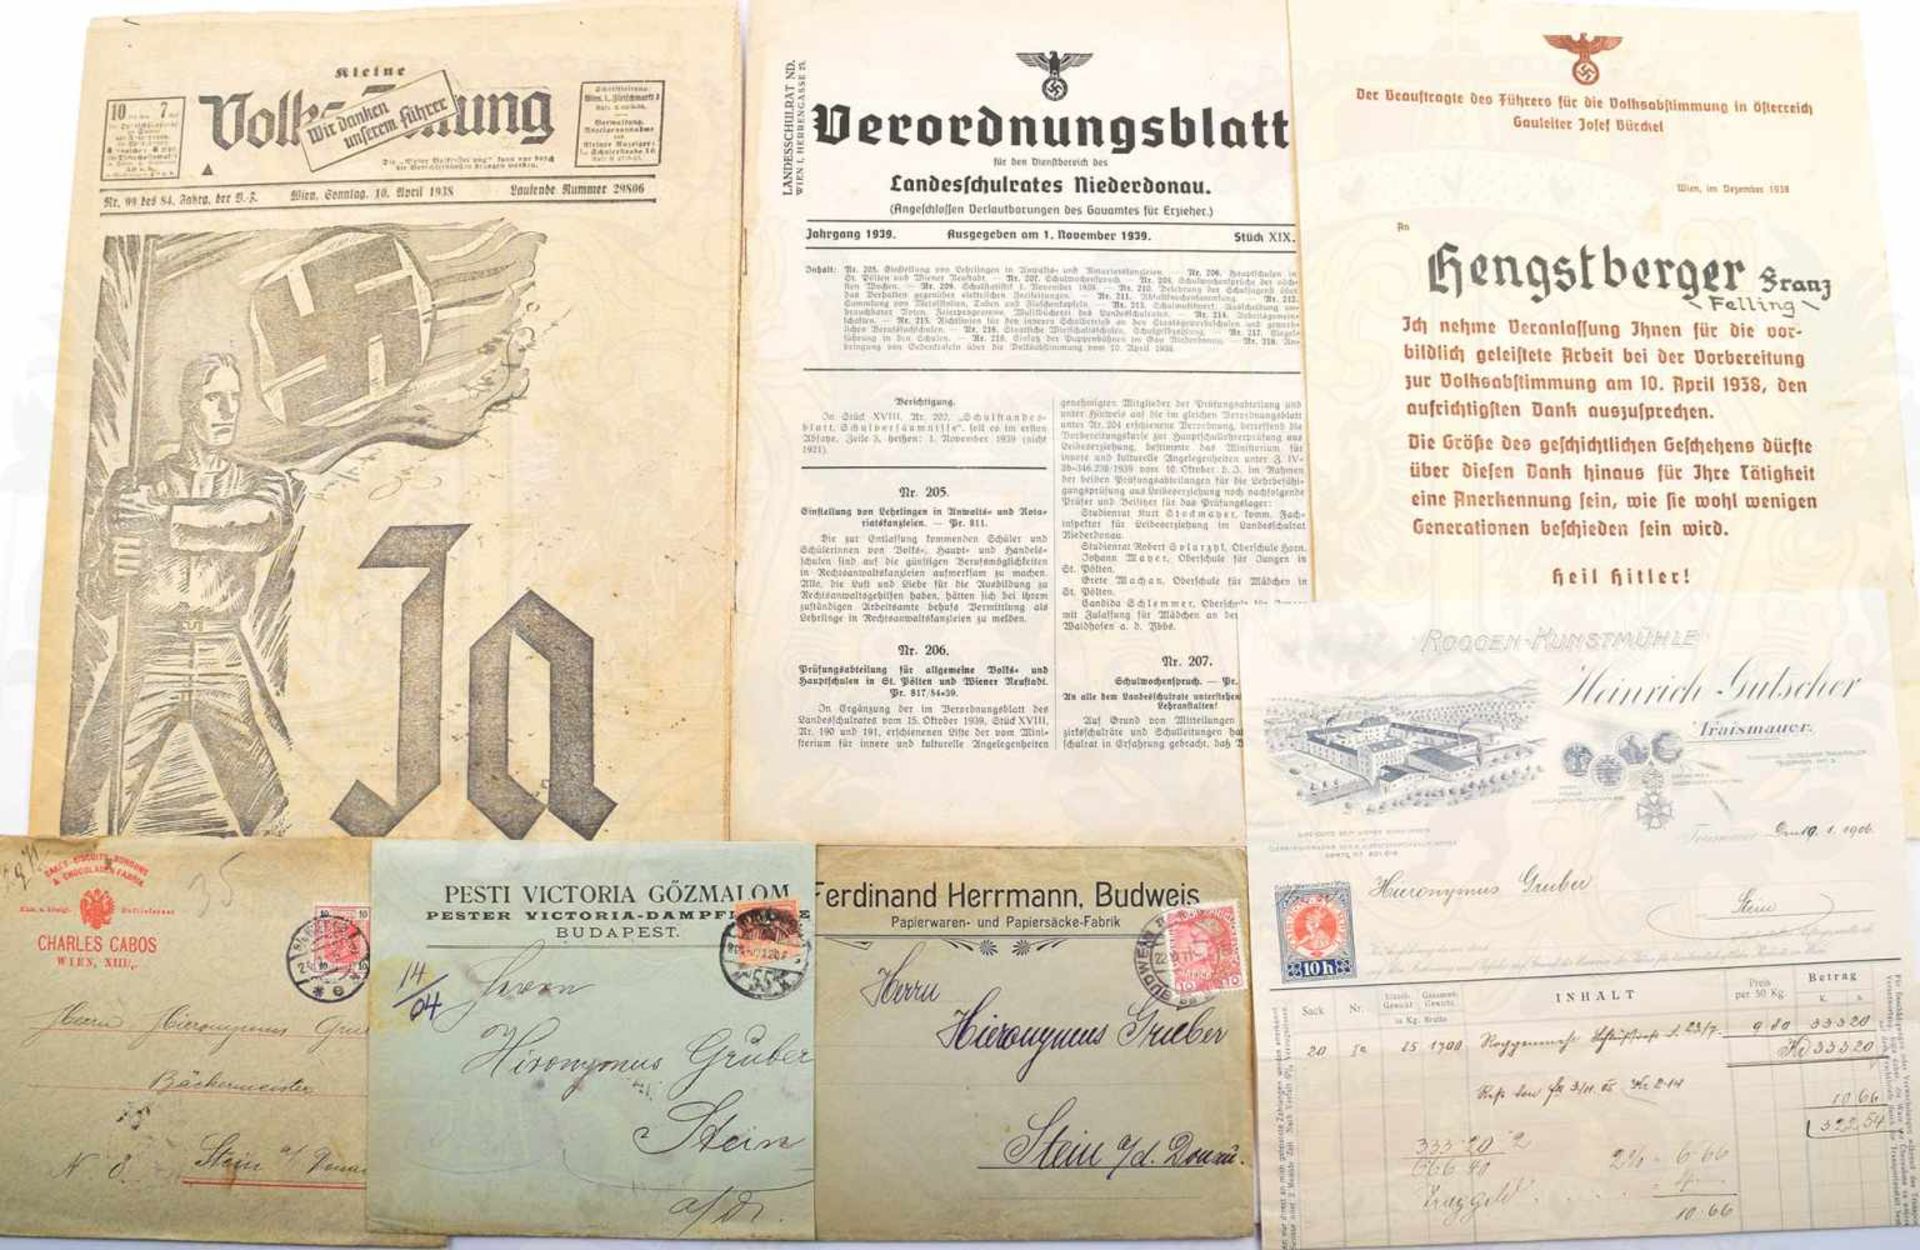 LOT DOKUMENTE, ungezählt, 1840-1965, über 1000 Teile, Dt. Kaiserreich, Weimarer Republik, Drittes